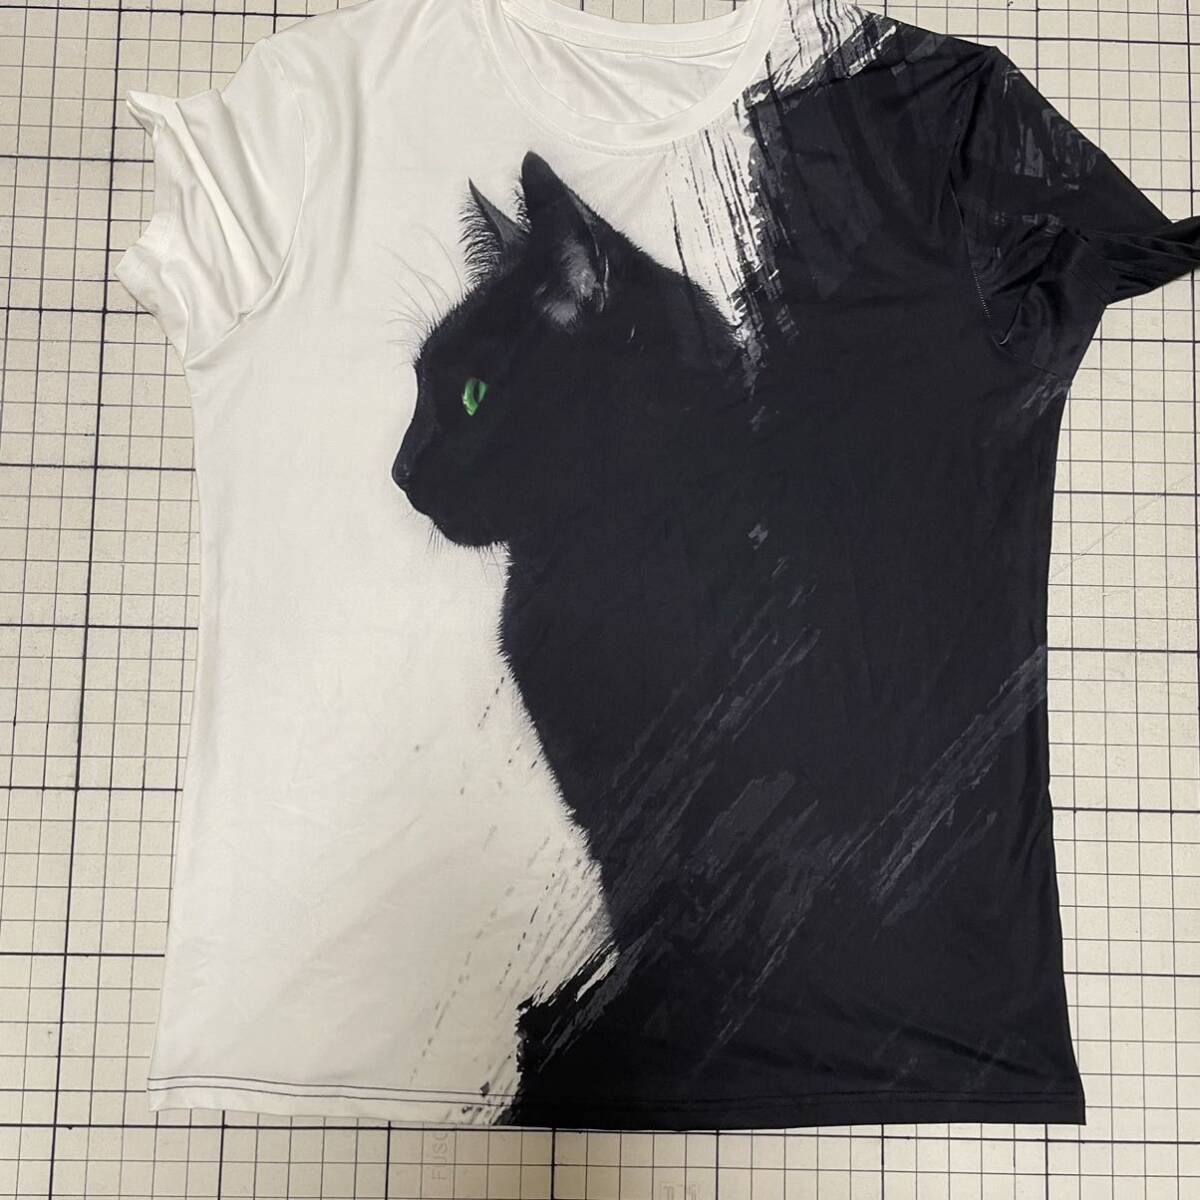 良品 黒猫 クロネコ キャット 両面ビックプリント半袖Tシャツ ストレッチ 収縮性あり Lサイズ ユニセックス可 ホワイト×ブラック/白黒の画像2